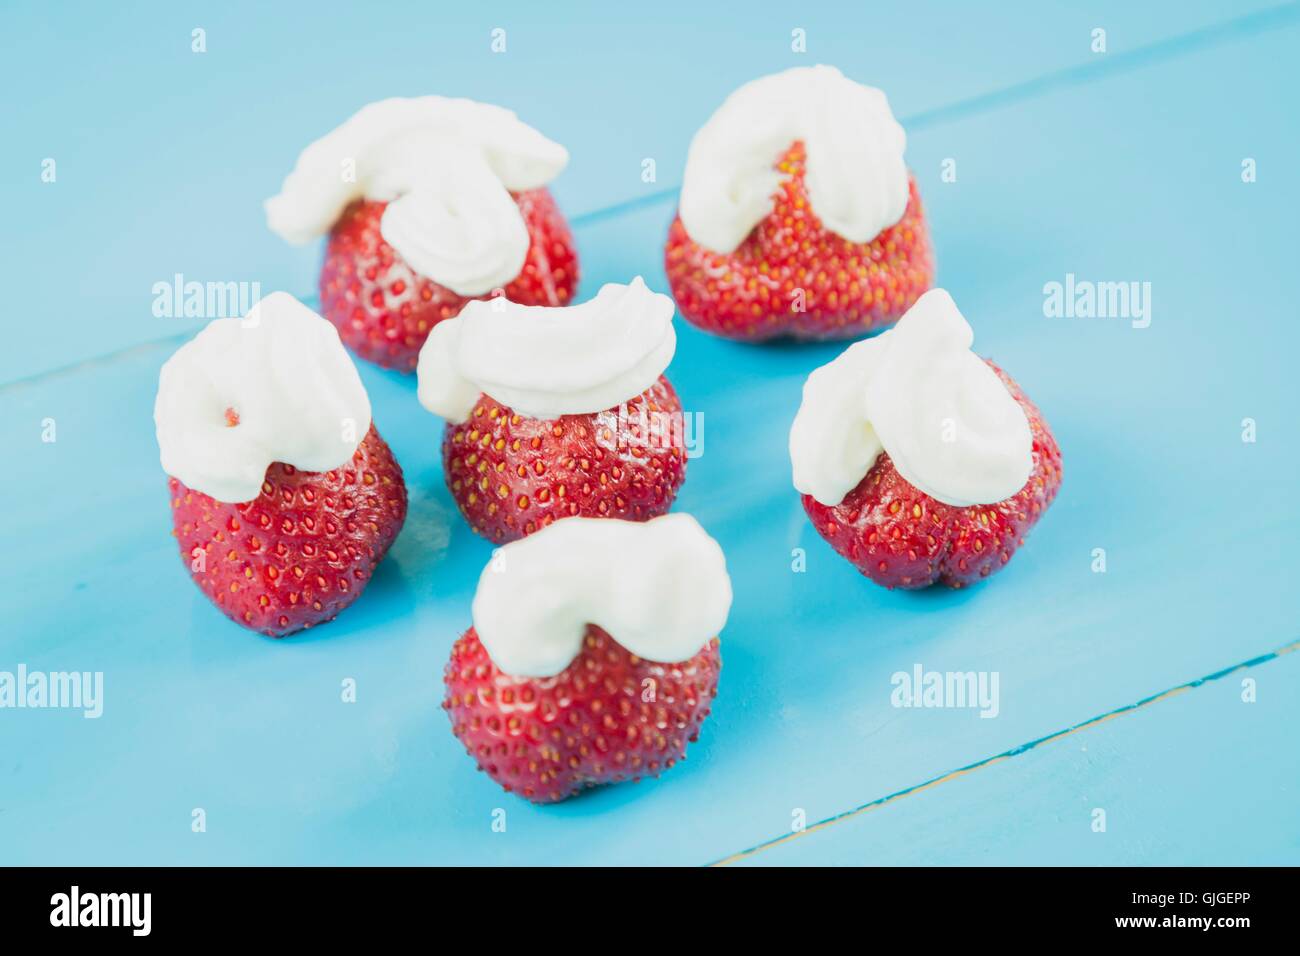 Fresh strawberries and whipped cream Stock Photo